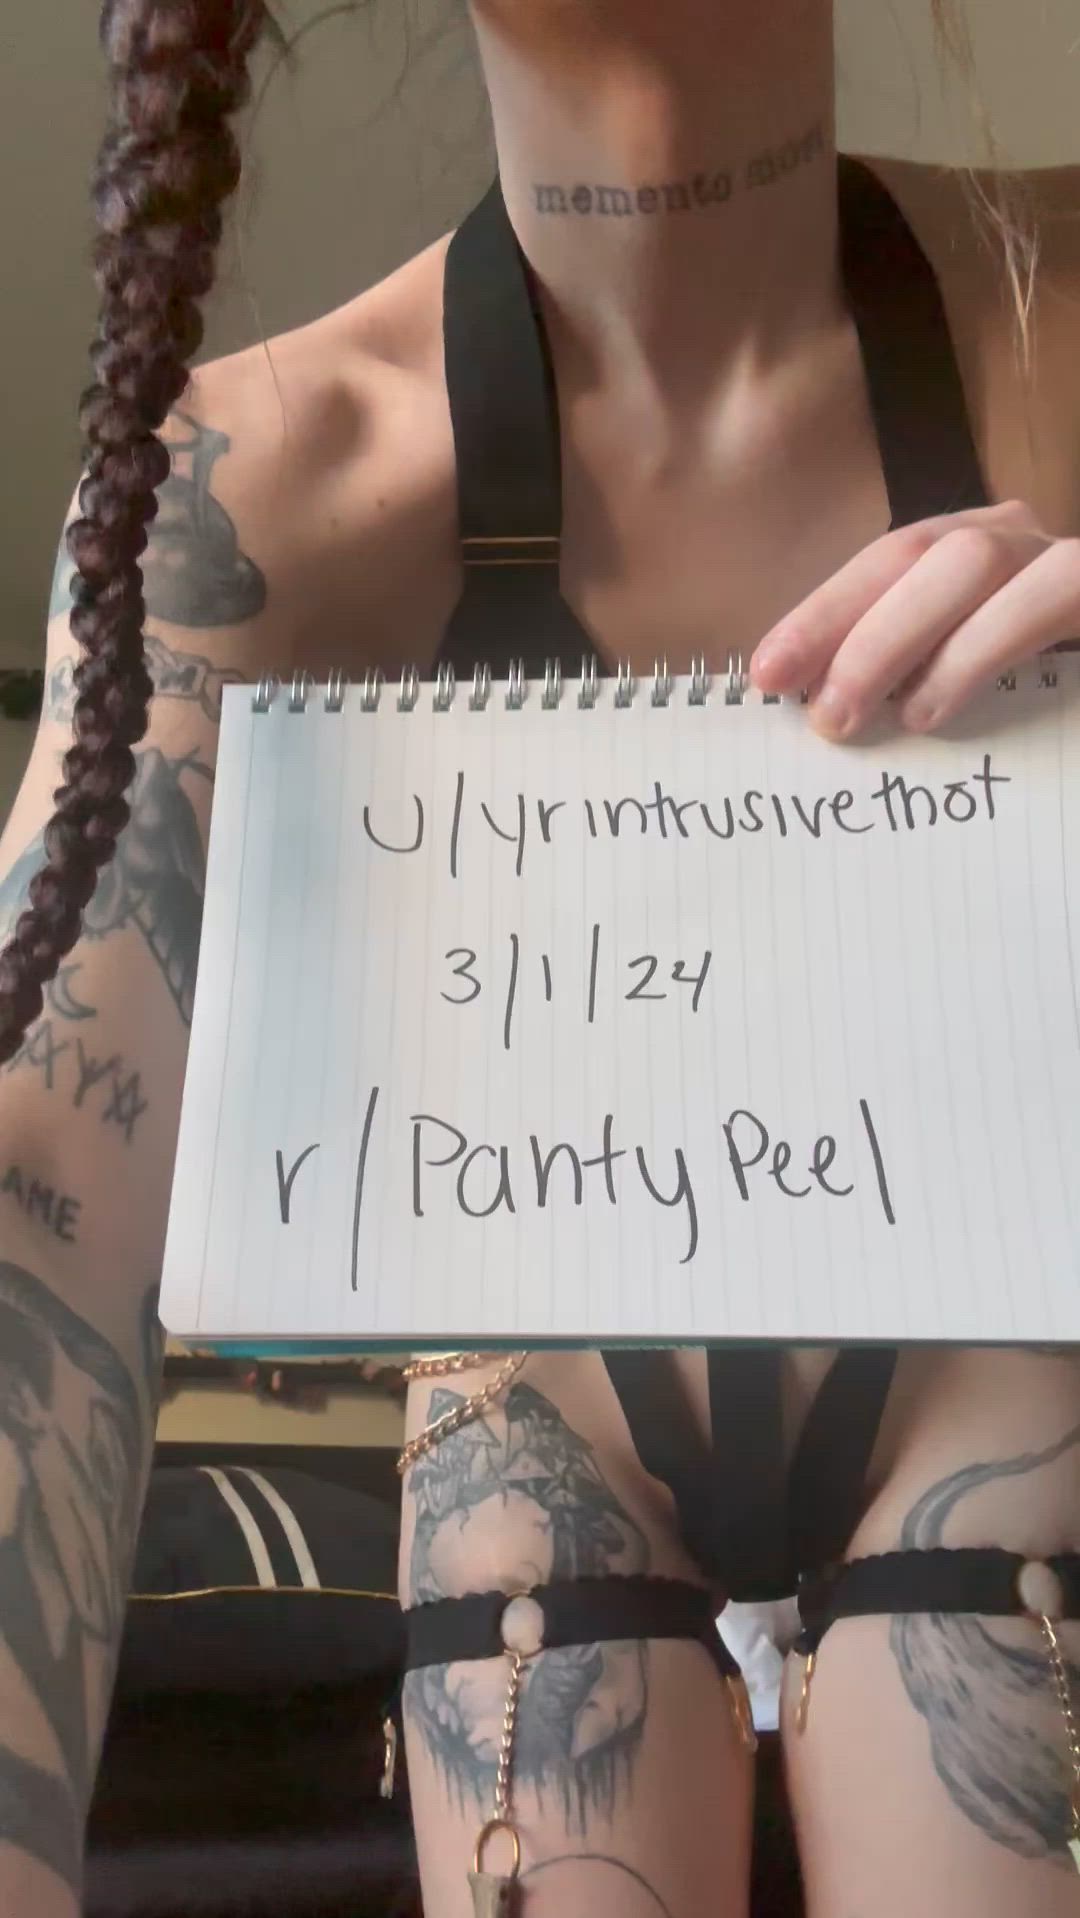 Alt porn video with onlyfans model urintrusivethot <strong>@yourintrusivethot</strong>